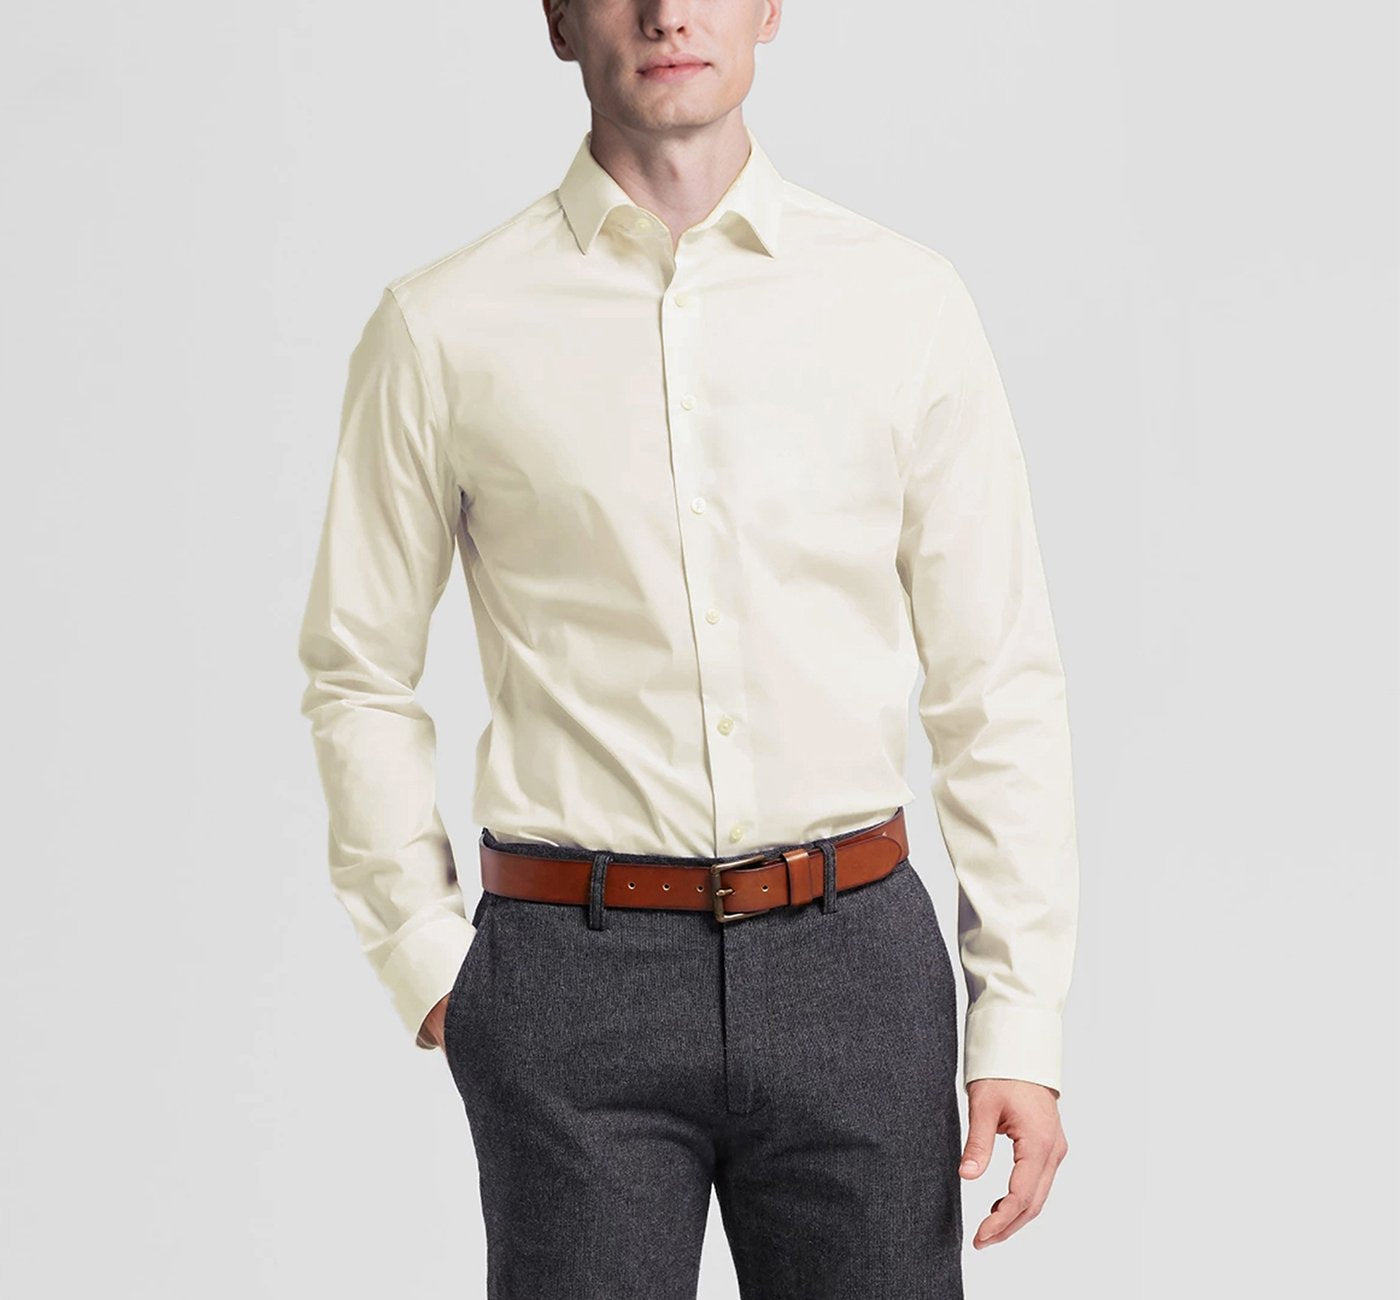 Men’s Classic/Regular Fit Long Sleeve Spread Collar Dress Shirt 3